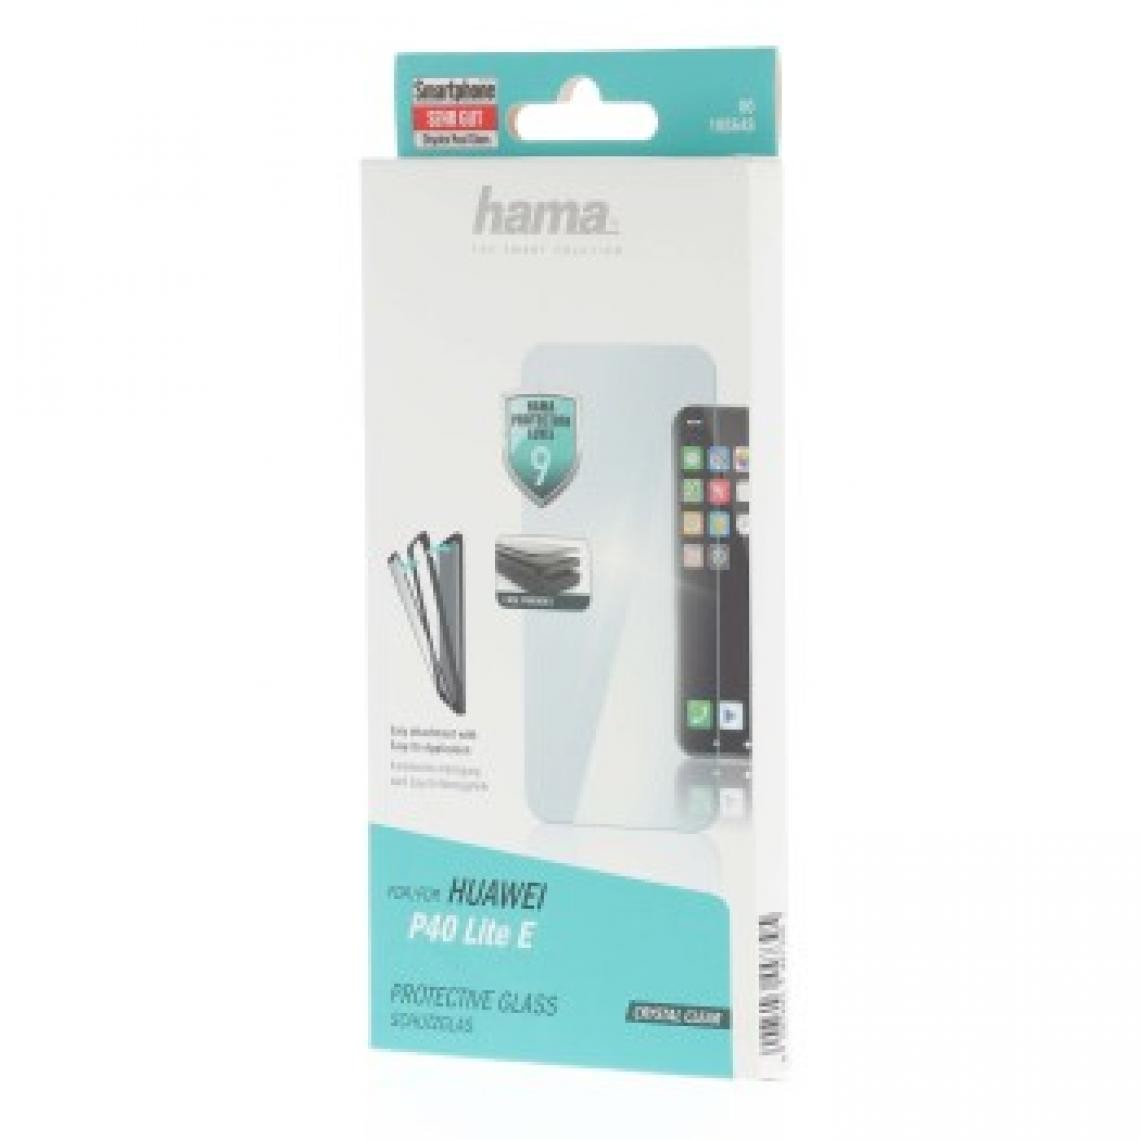 Hama - Protection d'écran en verre véritable pour huawei p40 lite e - Protection écran smartphone